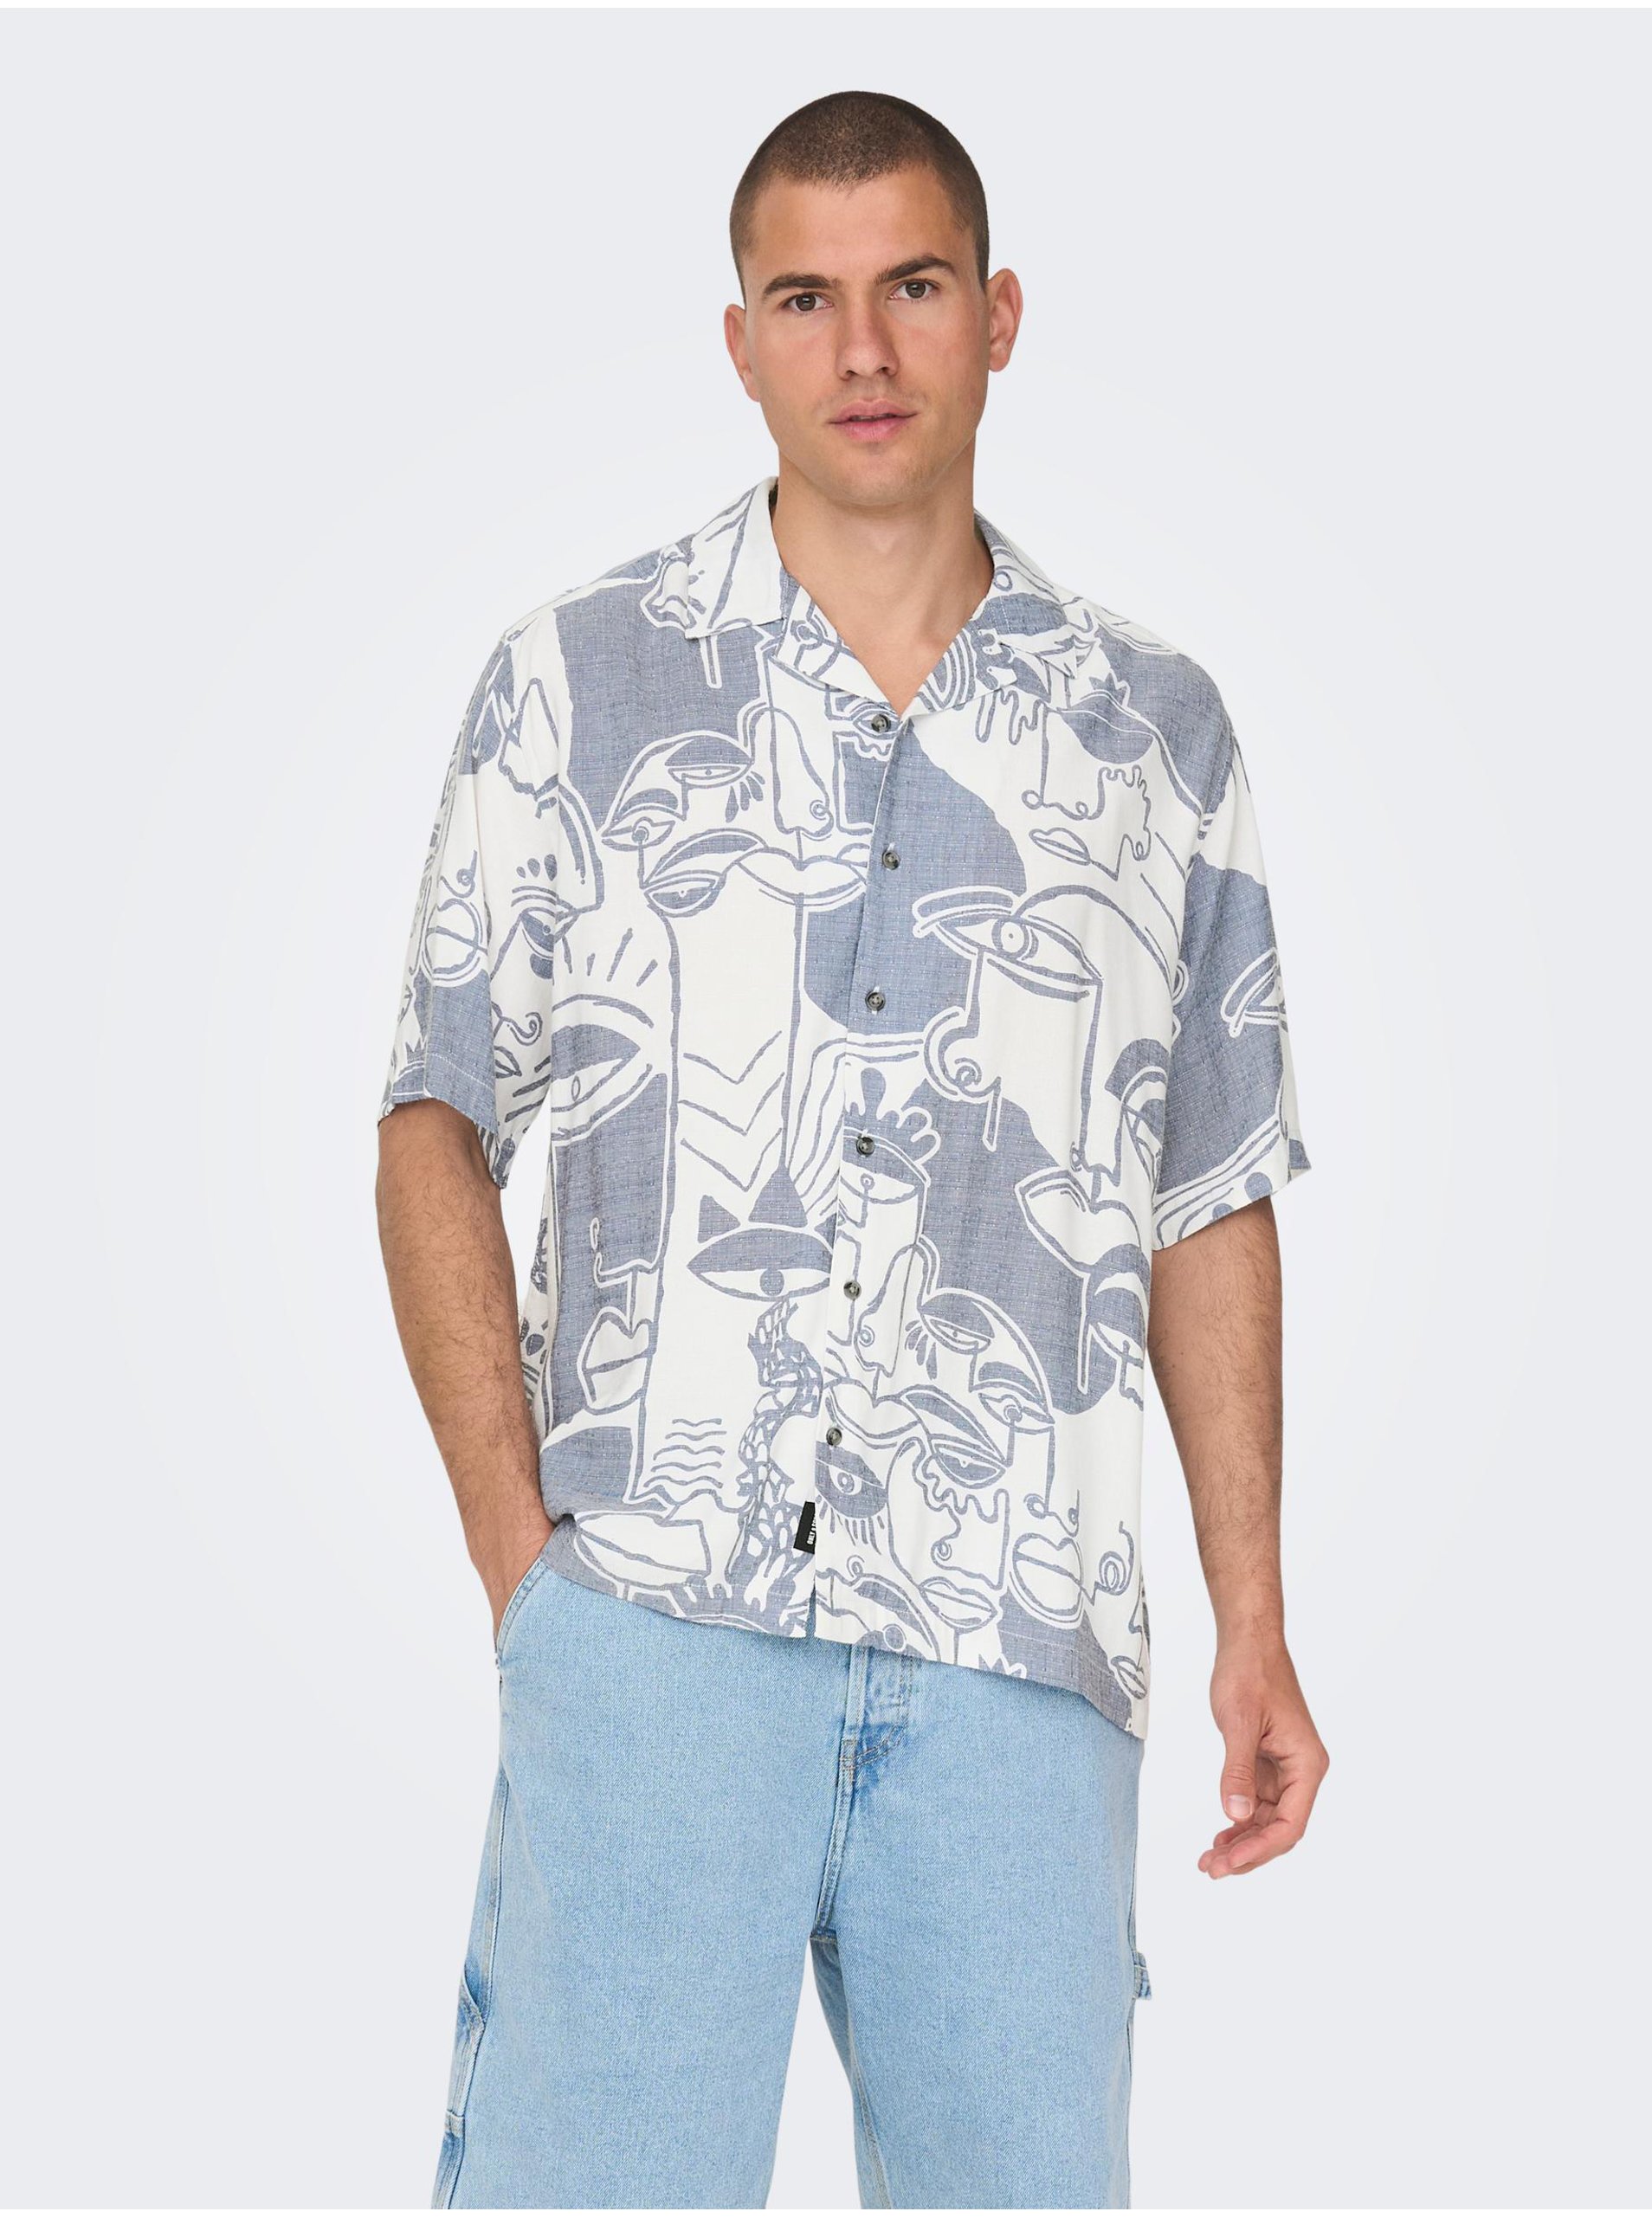 E-shop Bielo-modrá pánska vzorovaná košeľa s krátkym rukávom ONLY & SONS Den